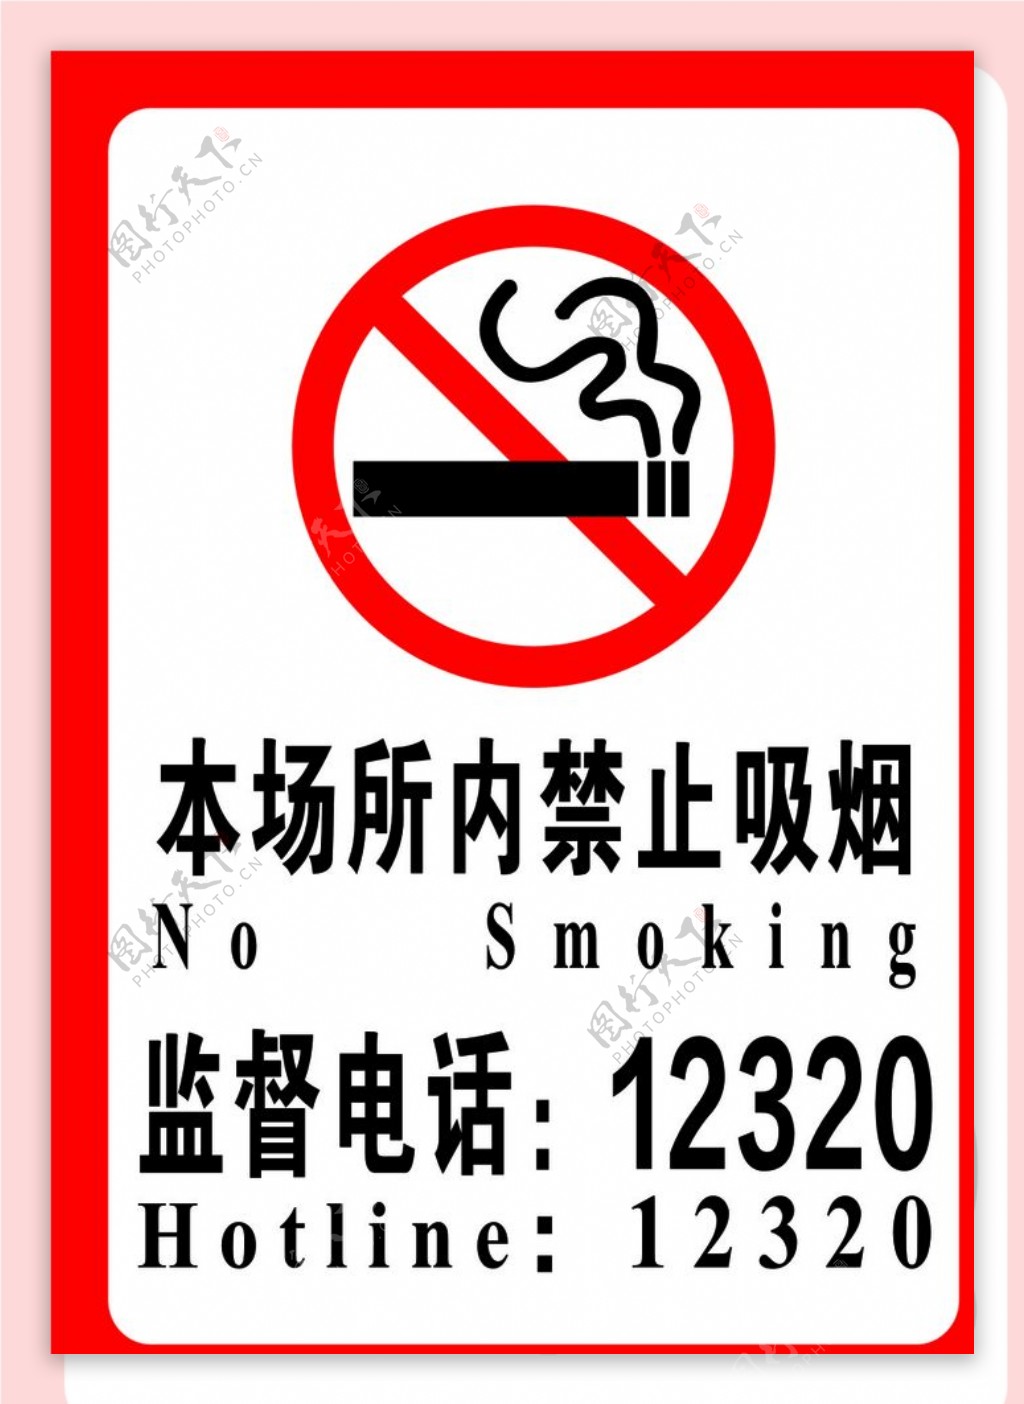 禁止吸烟广告图片